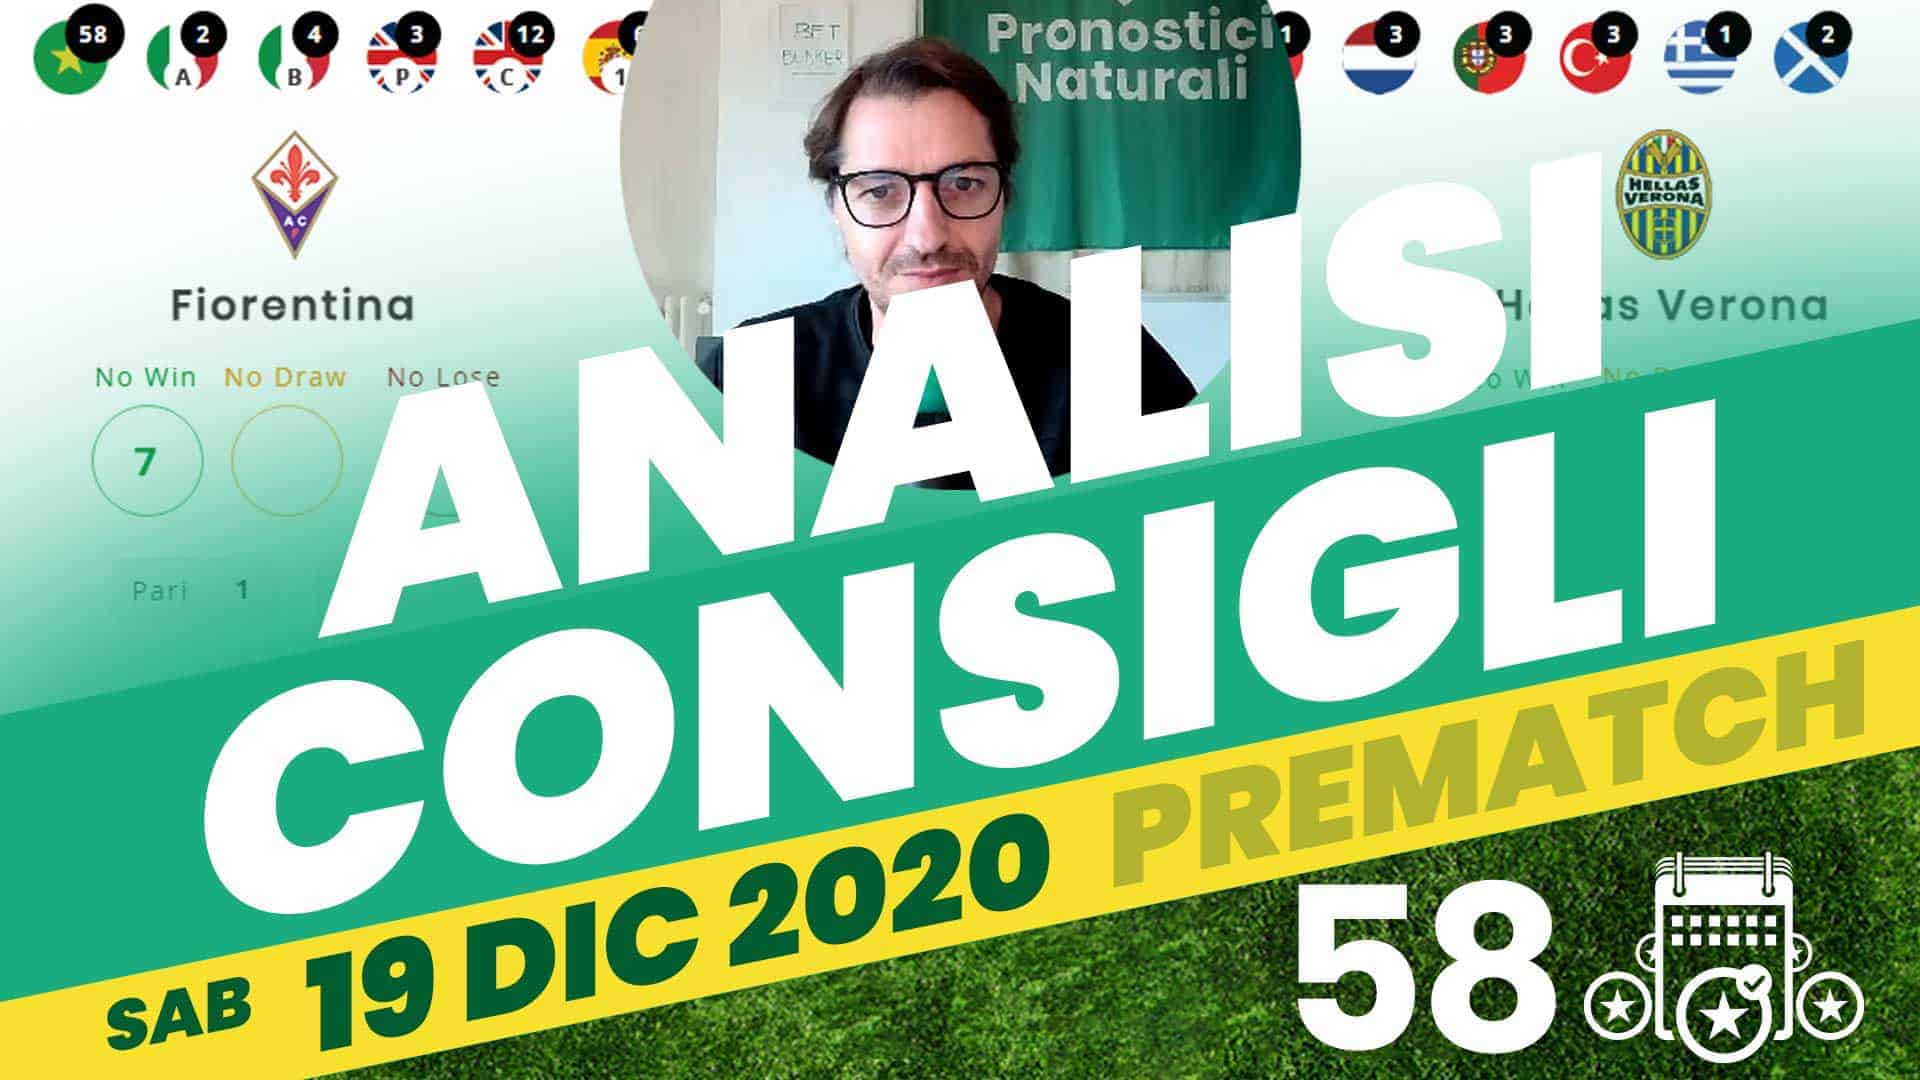 Pronostici Naturali Video Analisi Scommesse Betting Calcio Pre Partite Sabato 19 Dicembre 2020